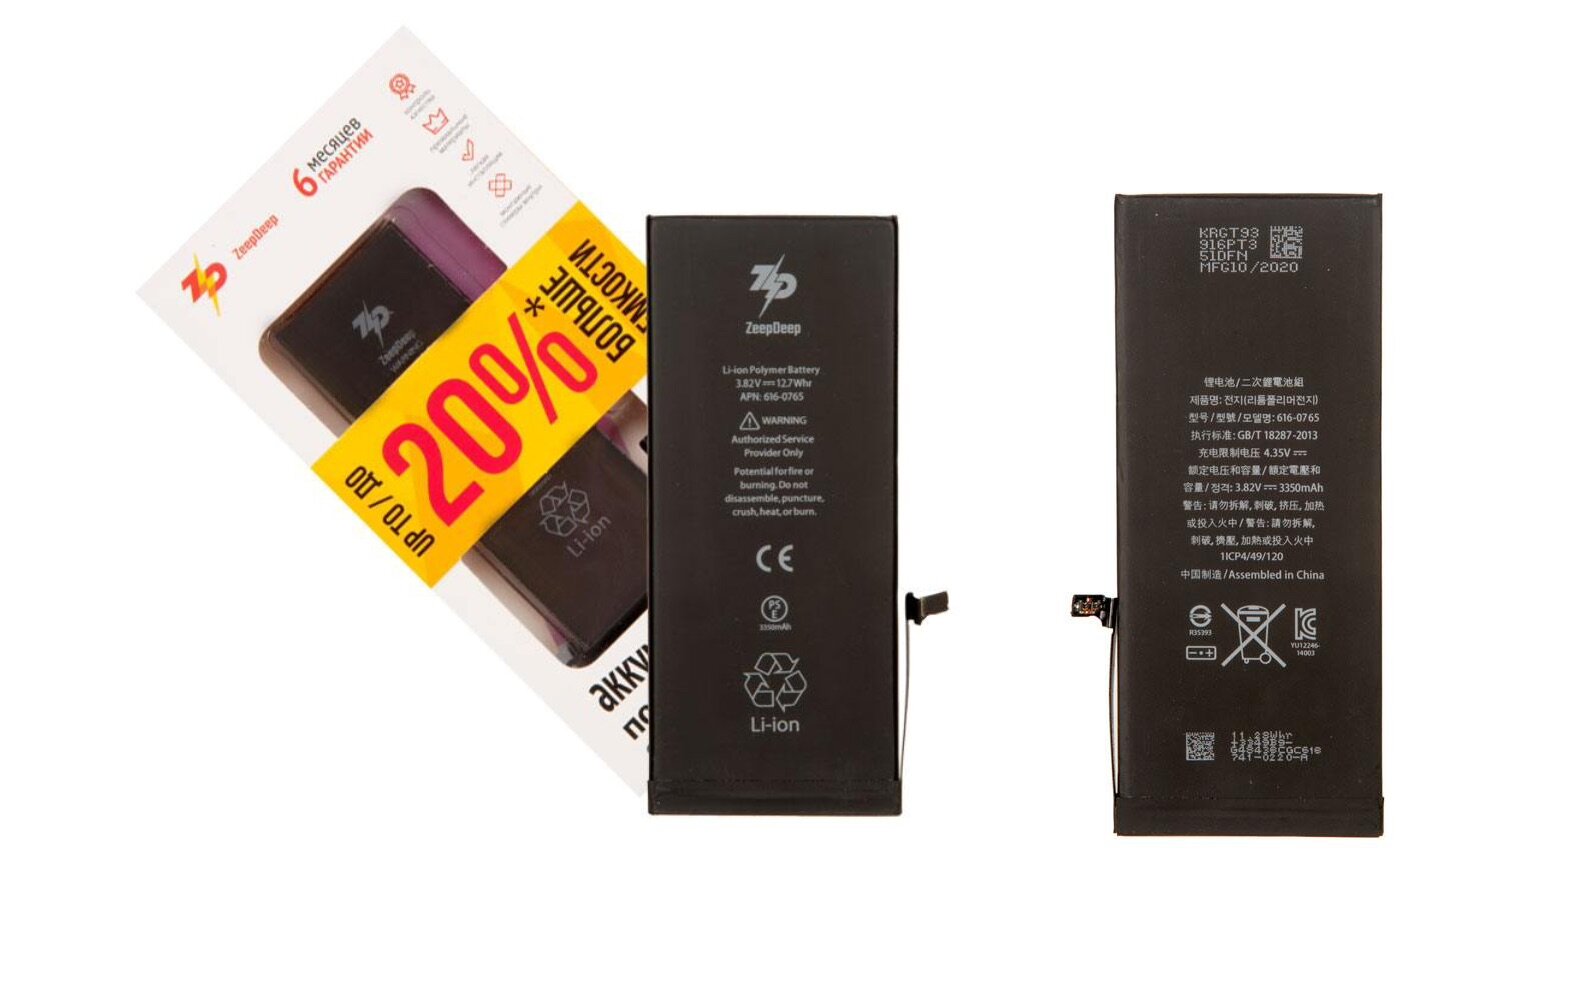 Battery / Аккумулятор ZeepDeep для iPhone 6 plus +13% увеличенной емкости: батарея 3350 mAh, монтажные стикеры